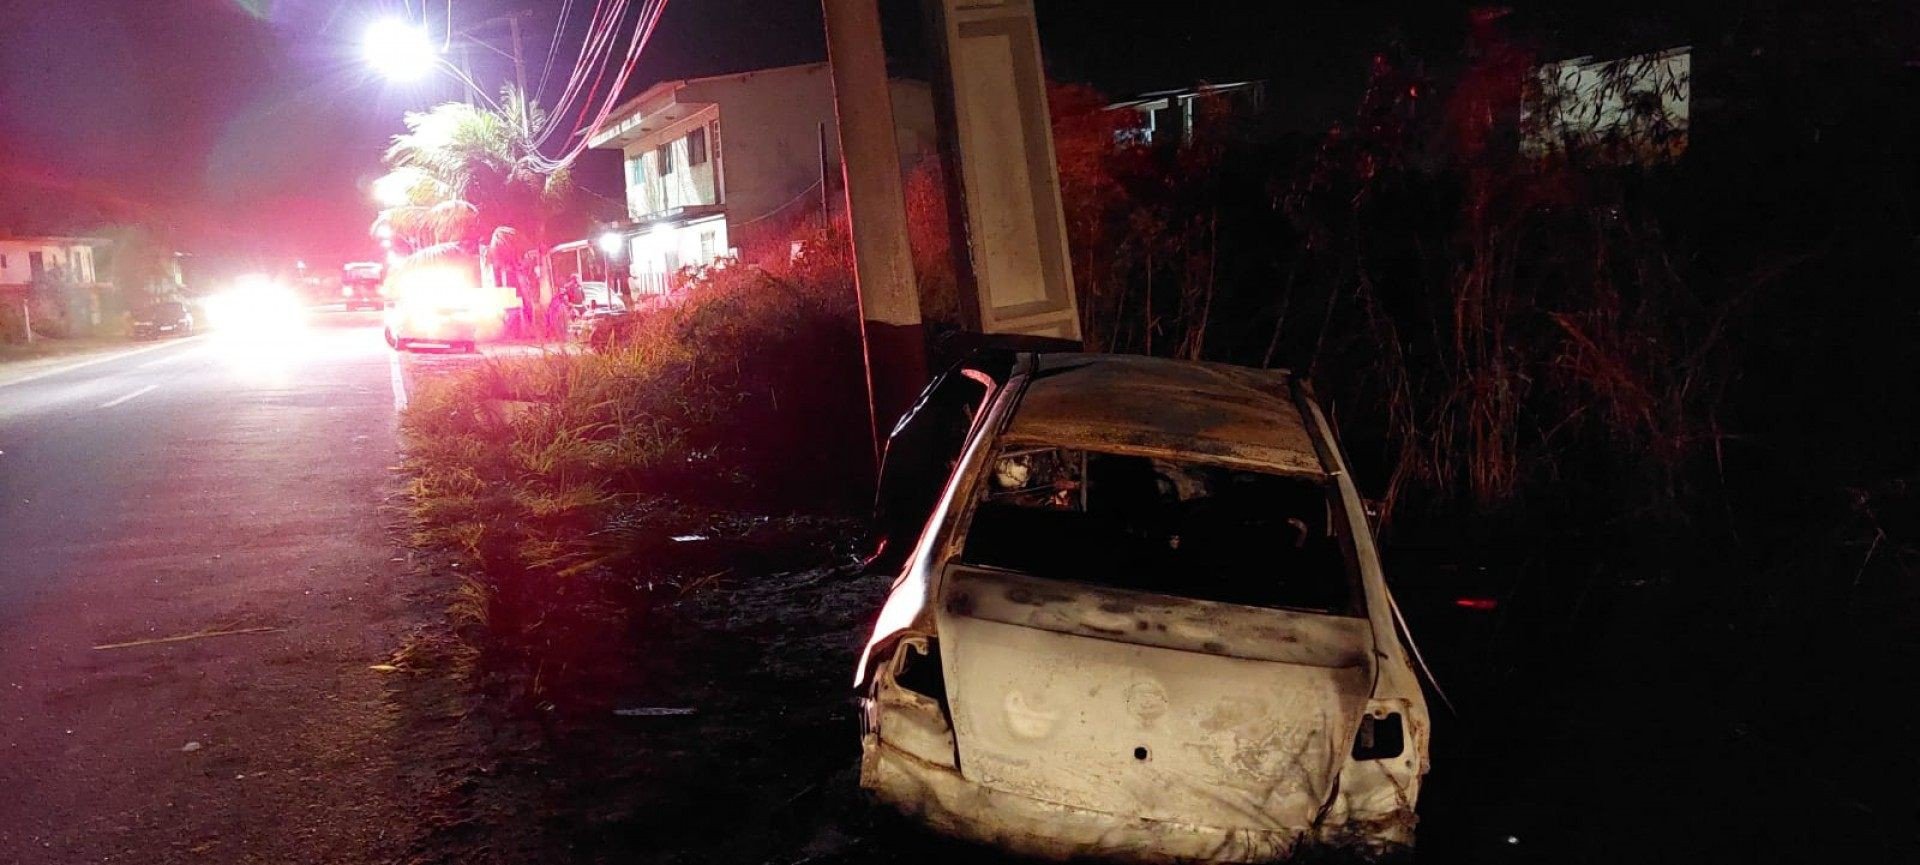 Até às 19h15, veículo queimado ainda permanecia no local do acidente - Foto: R. Lagos Notícias